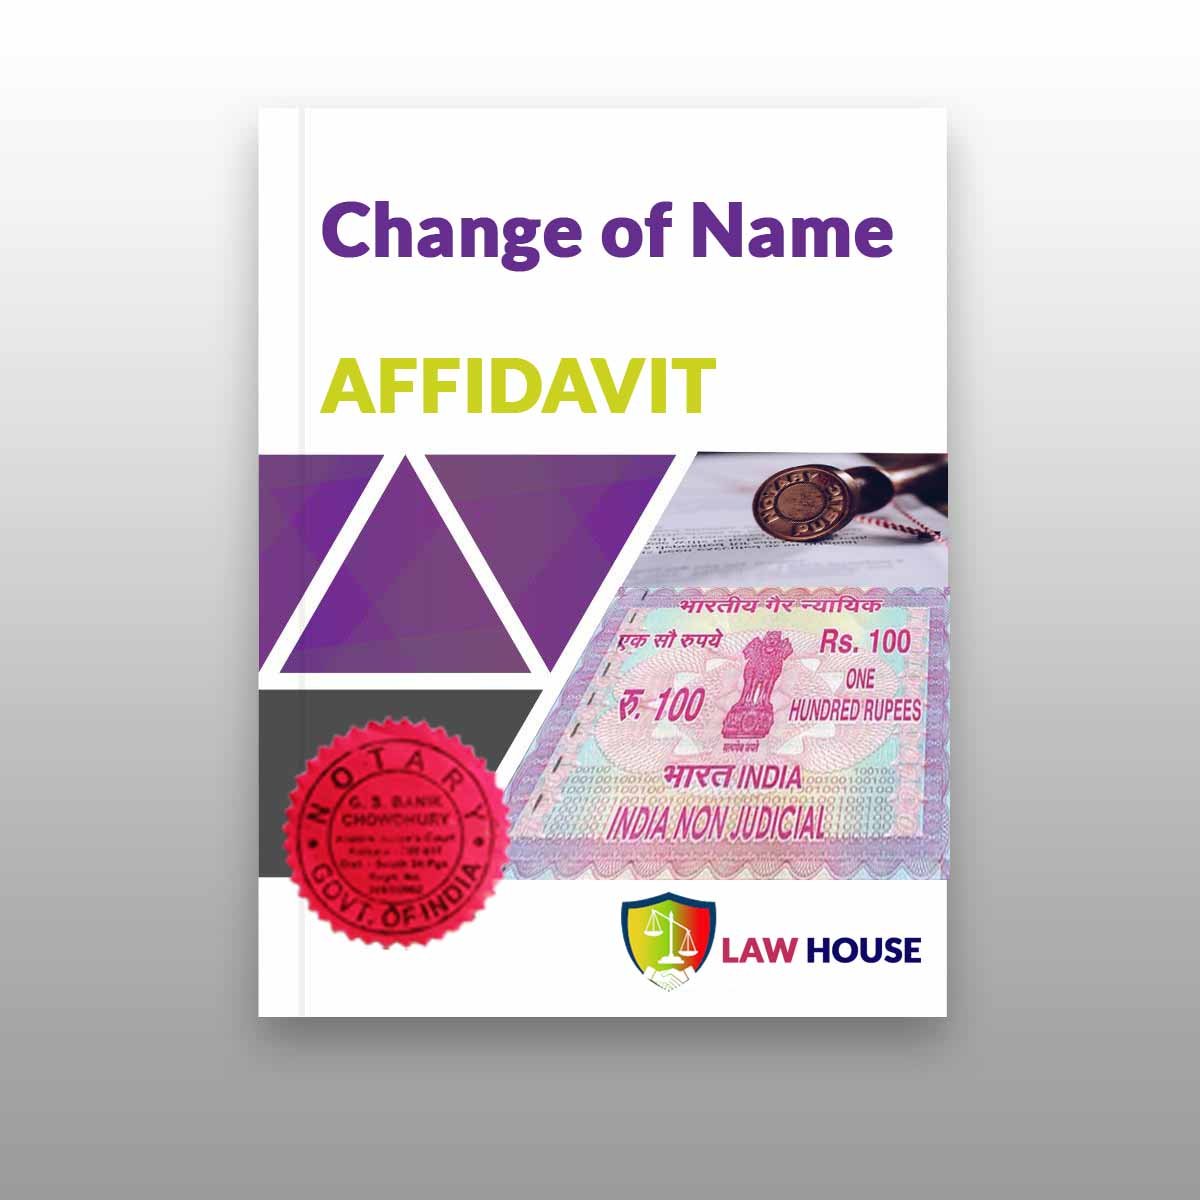 Affidavit — Newspaper Publication For Name Change